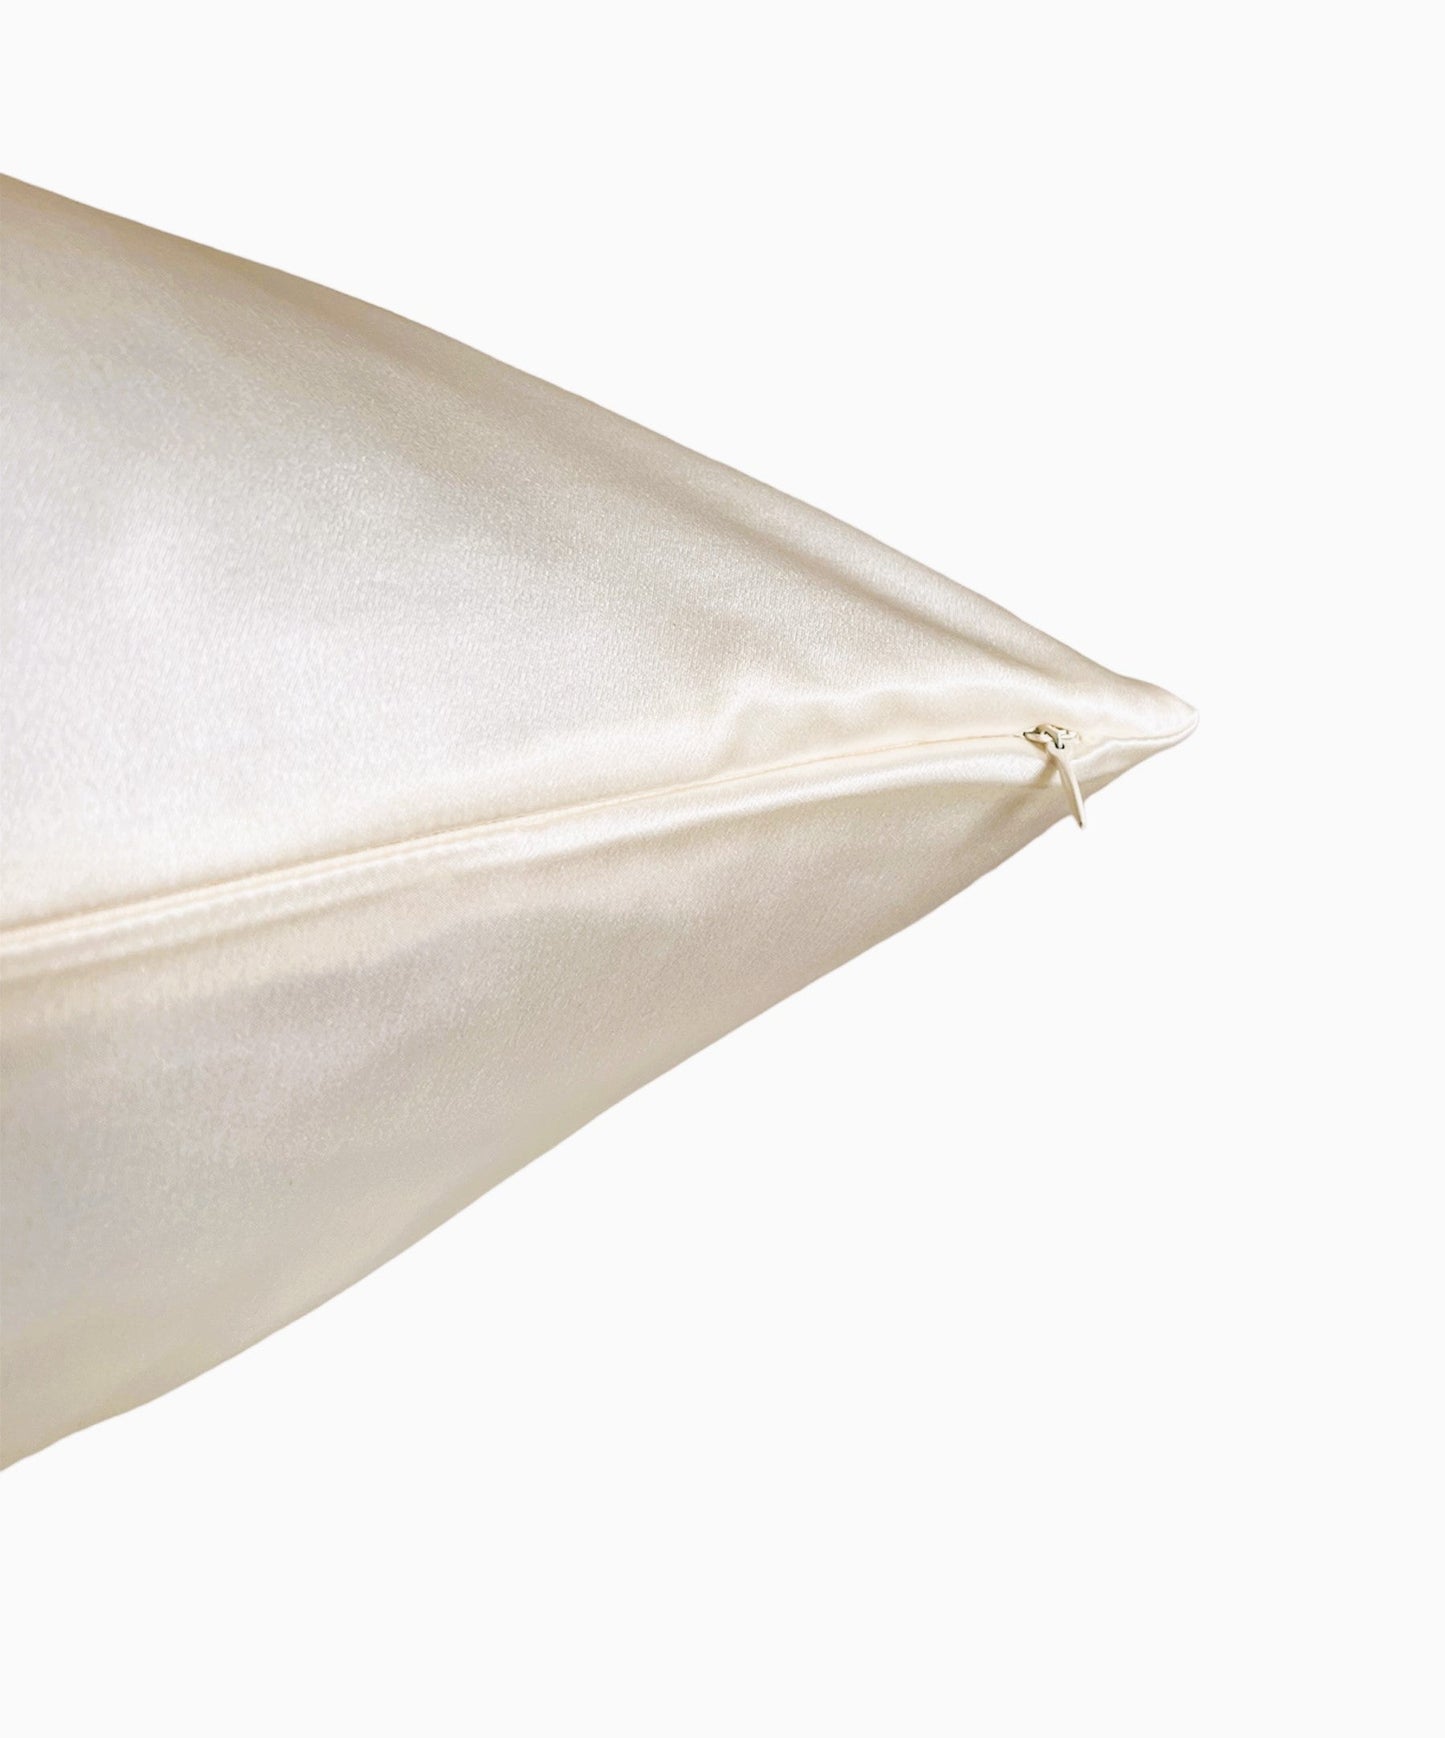 Pillowcase - Cream - Queen - 51X76